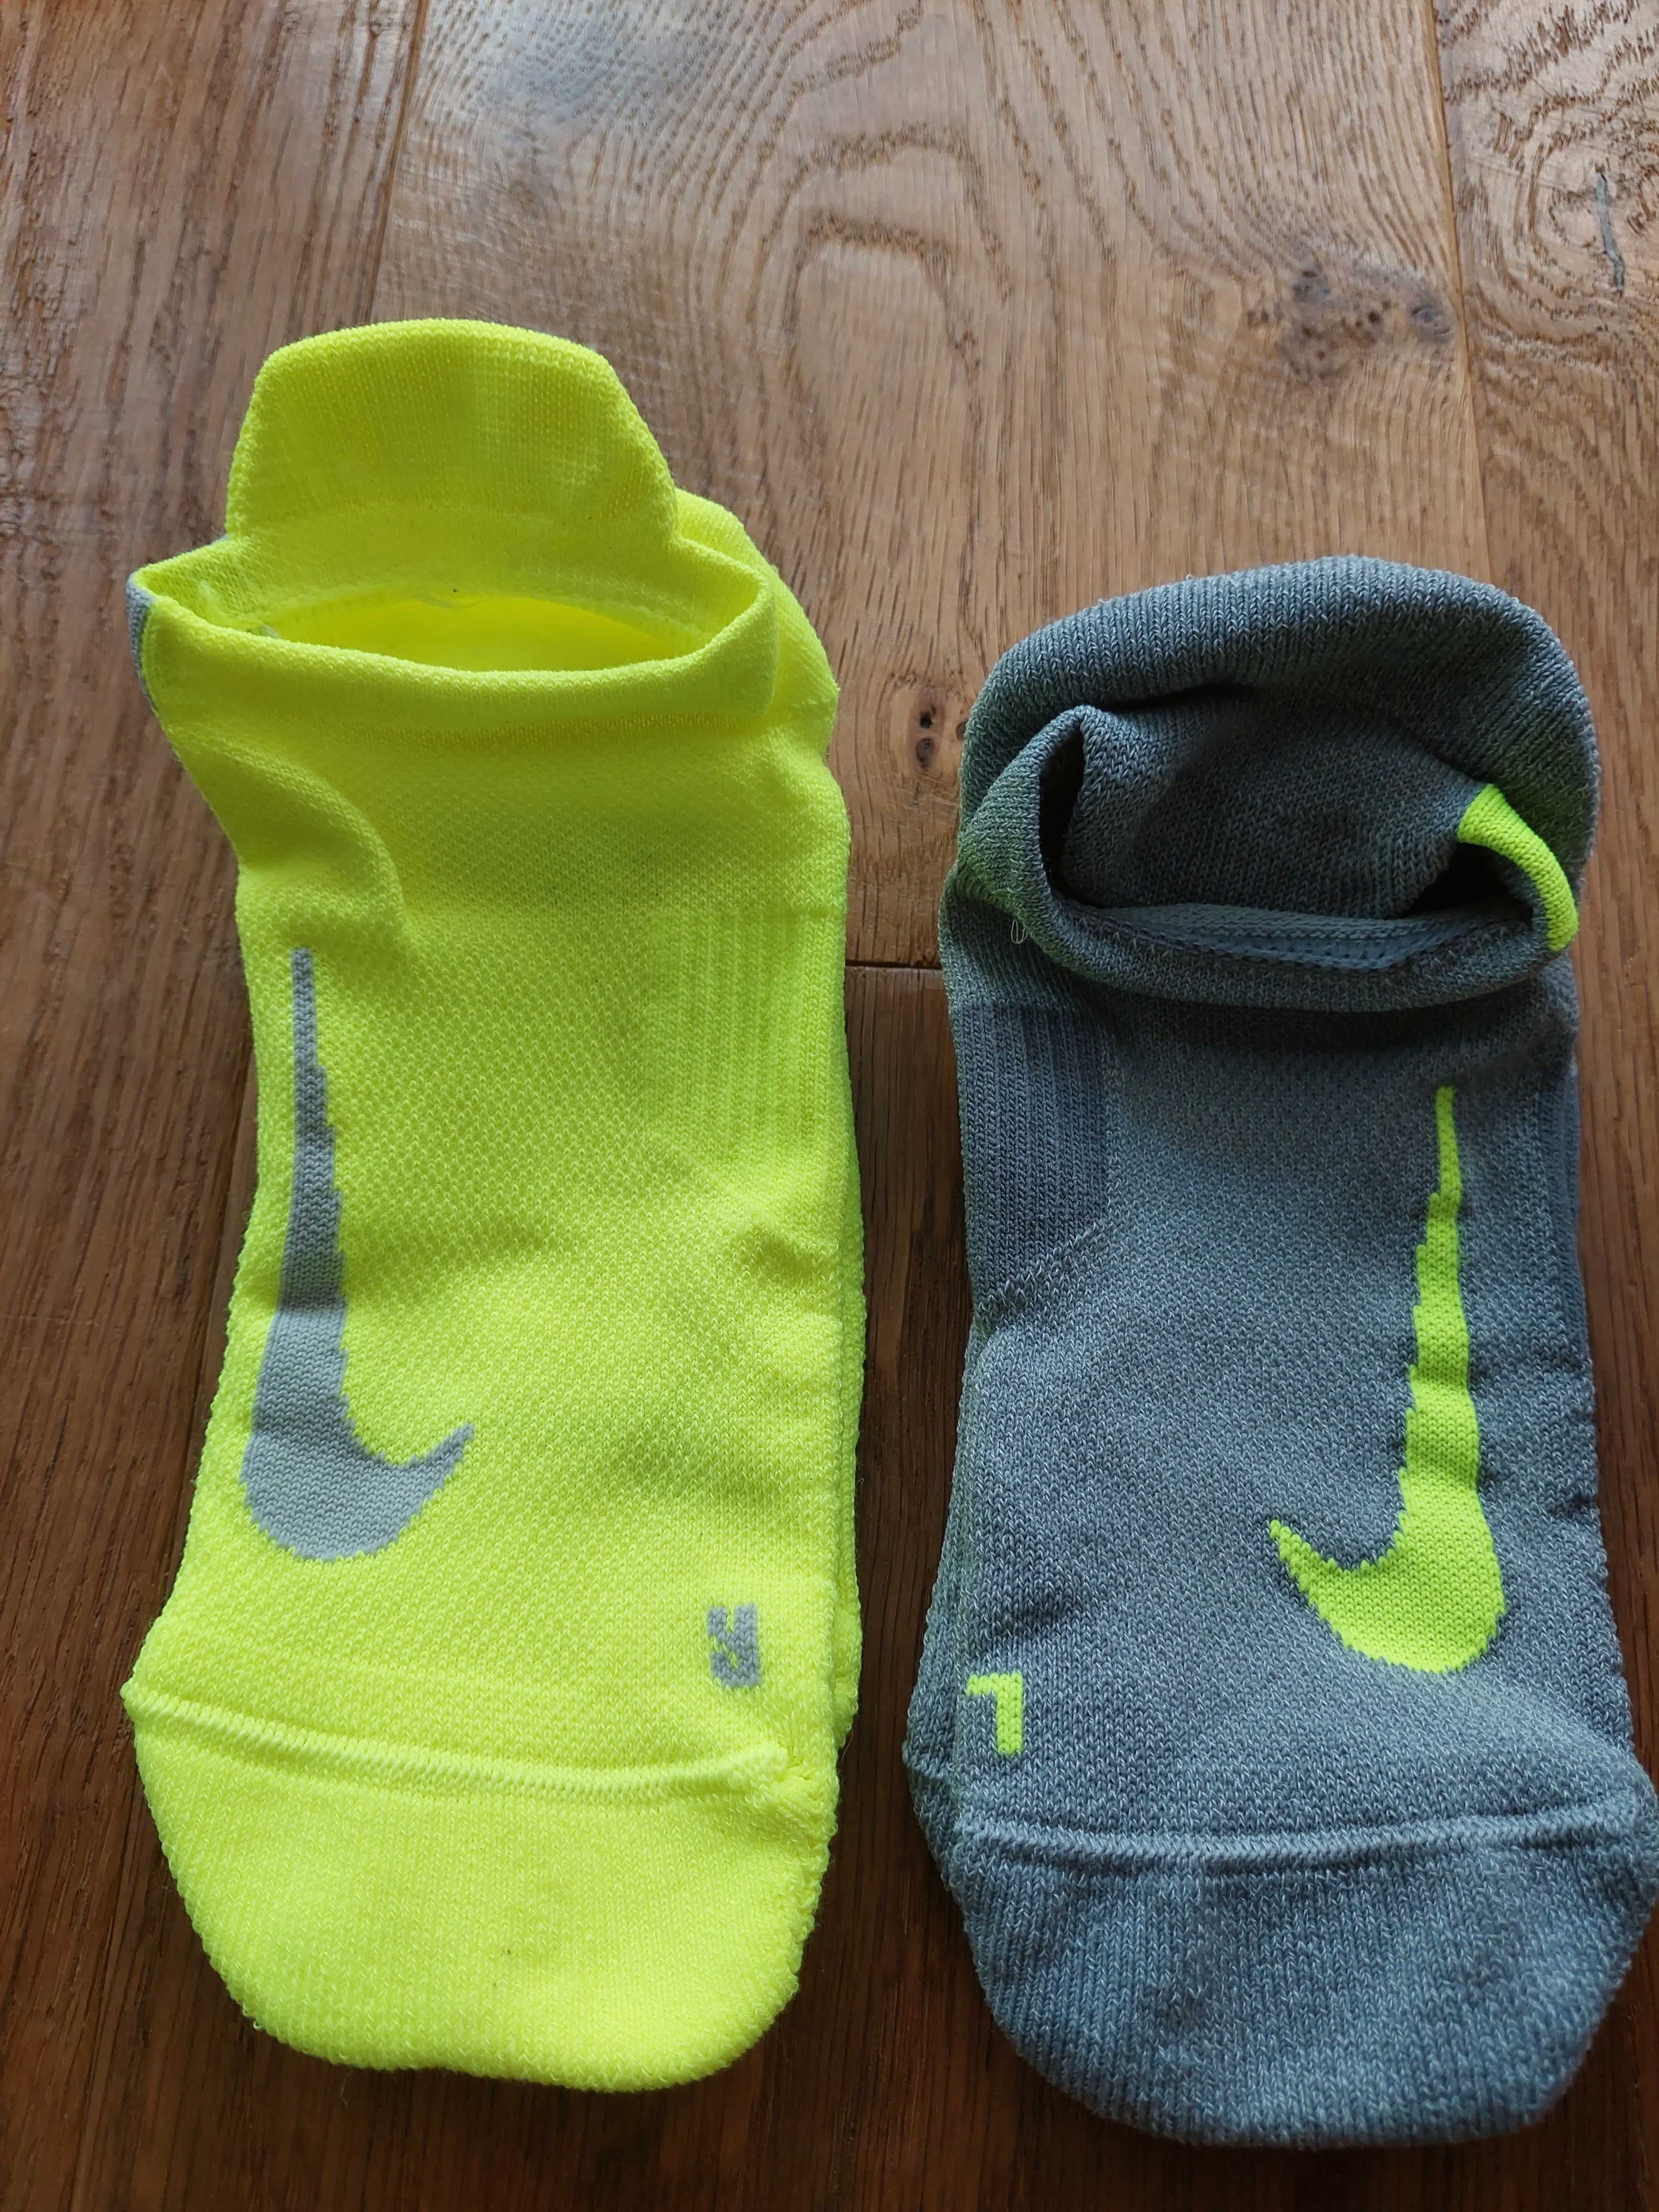 Skarpety Nike Multiplier No-Show 2 pary rozmiar 38-42 Szaro-Żółte